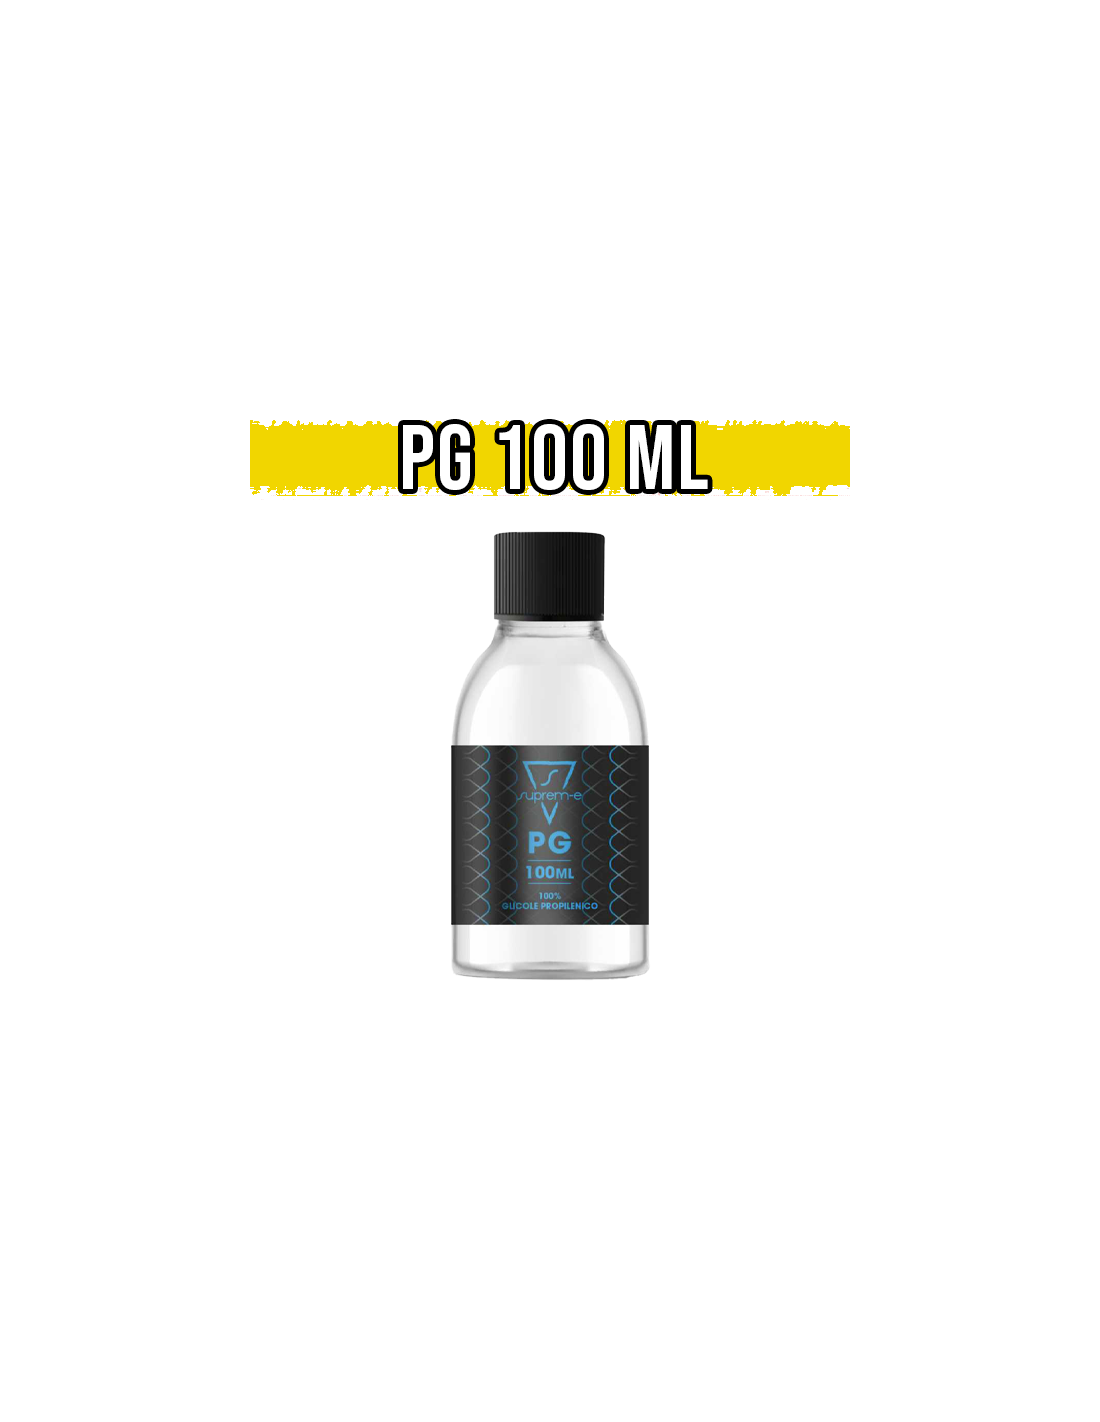 suprem-e glicole propilenico 100ml base full pg